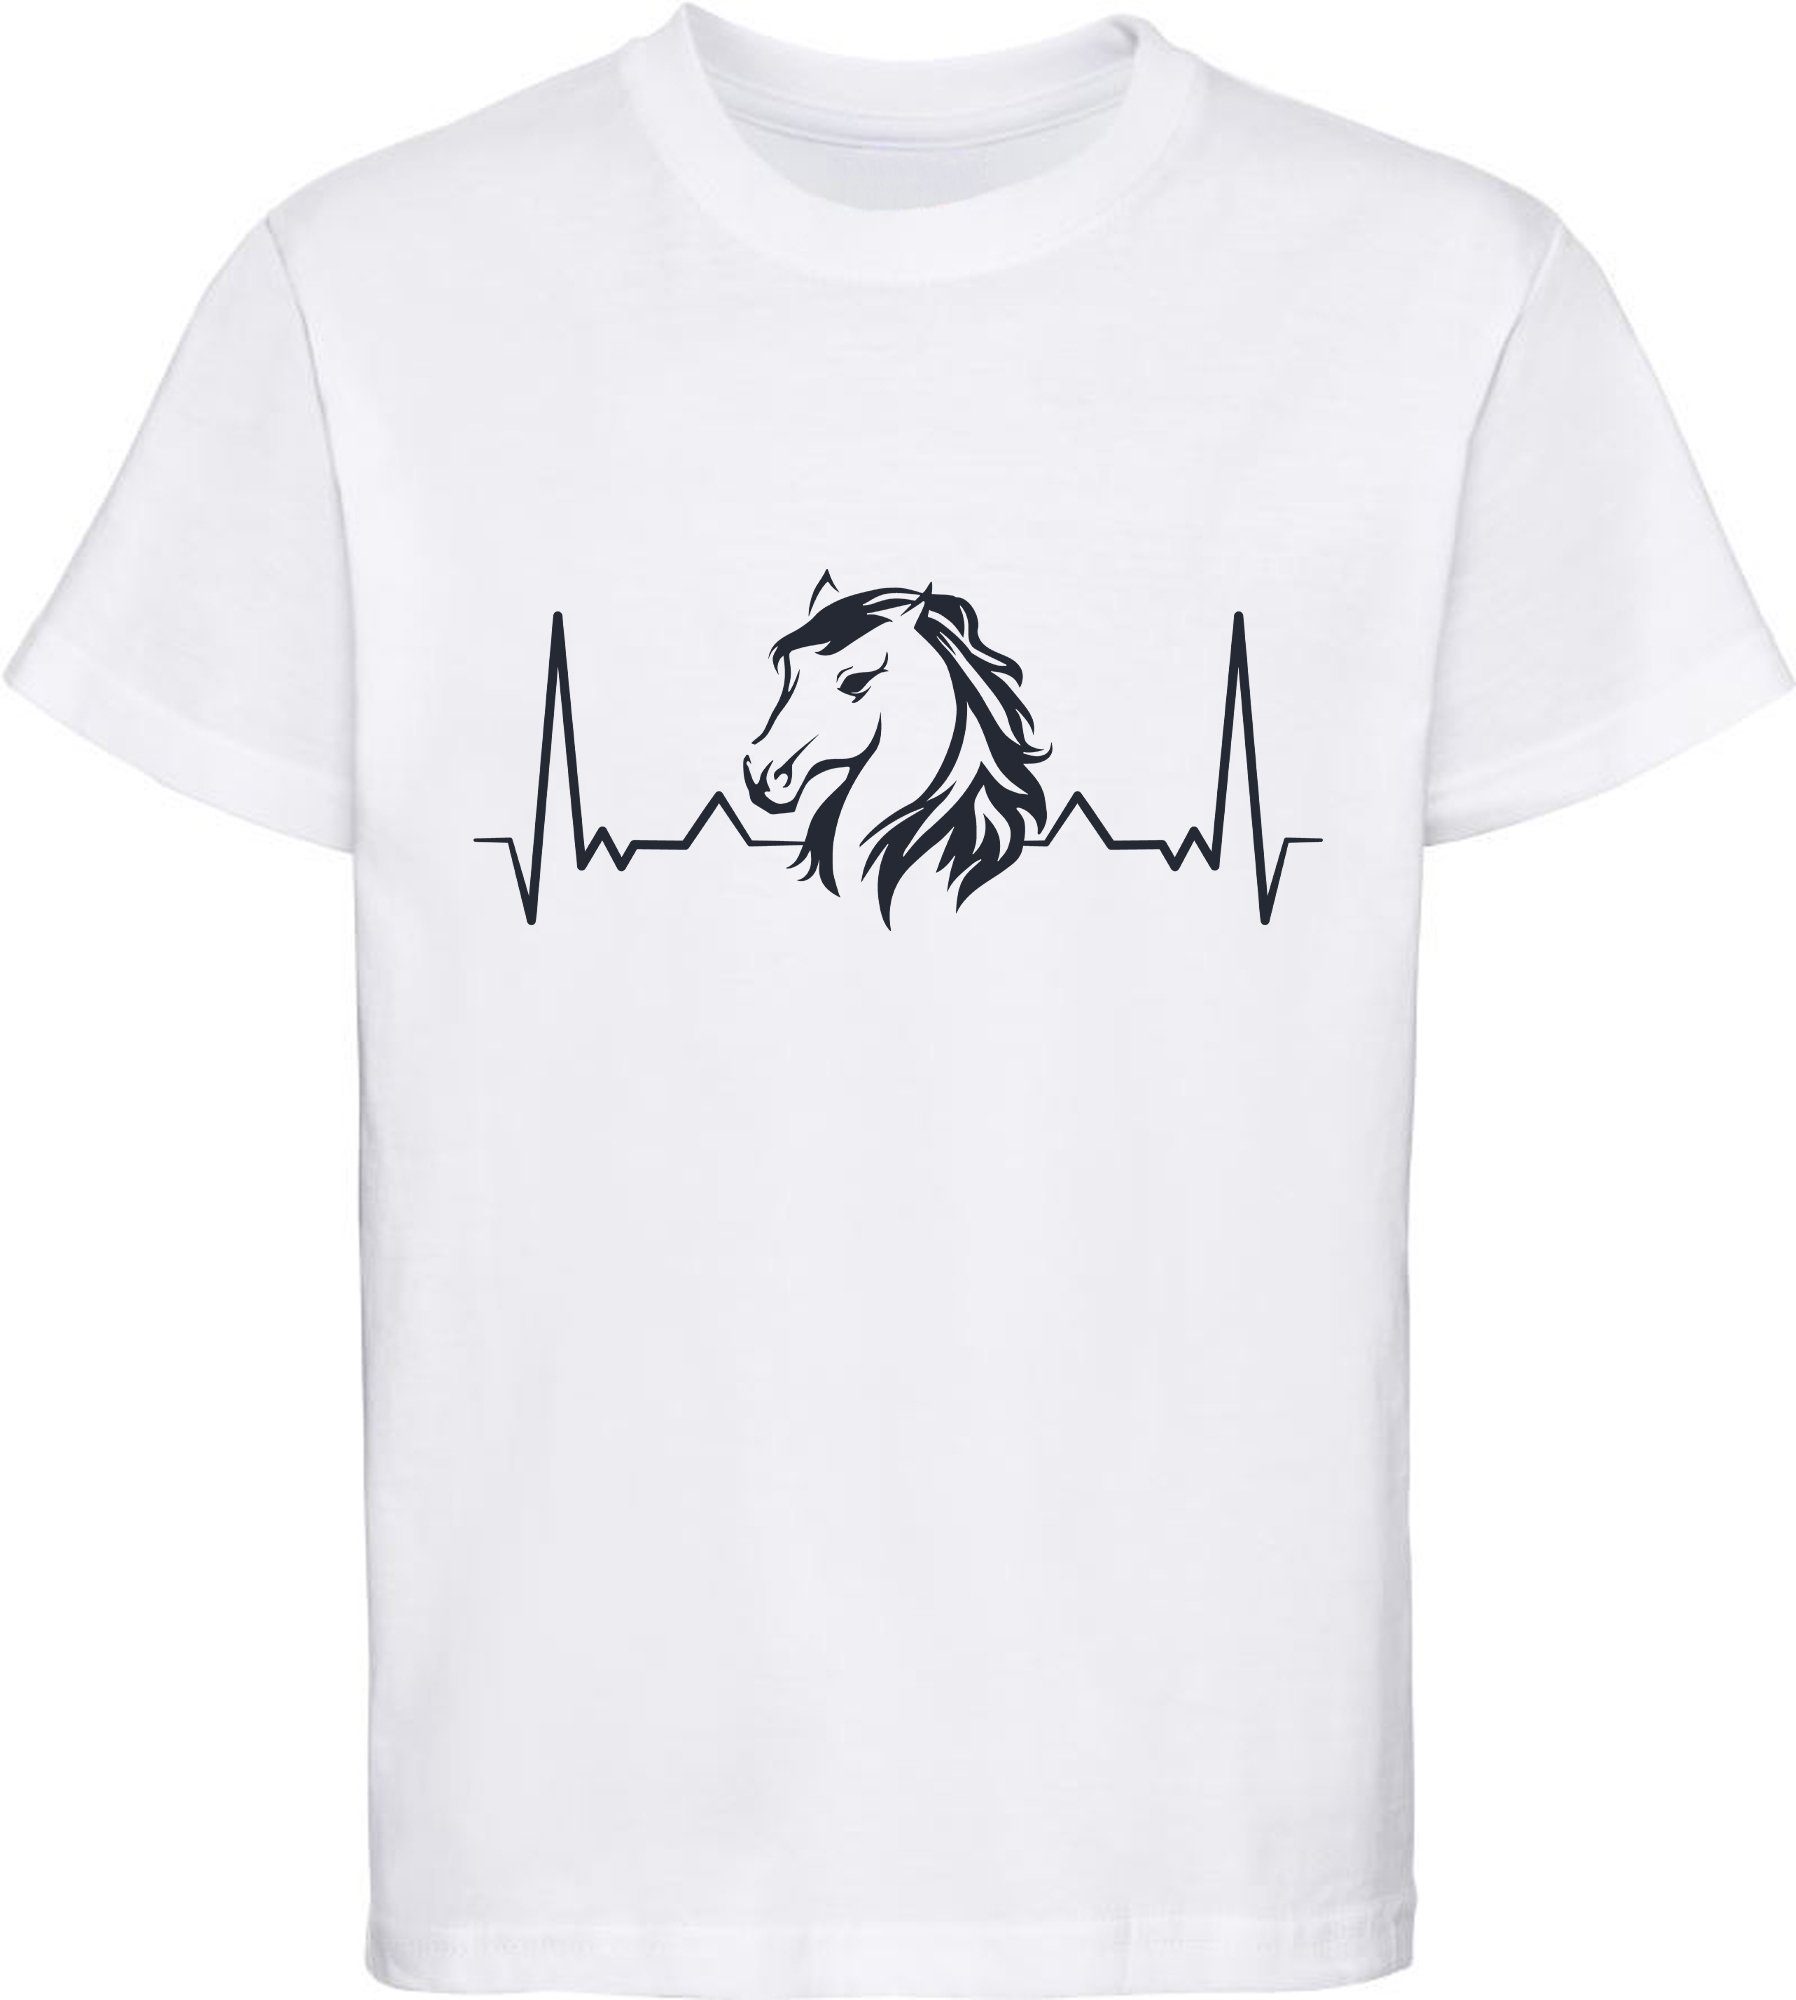 Aufdruck, Print-Shirt i143 weiss mit Herzschlaglinie T-Shirt Baumwollshirt MyDesign24 Mädchen Pferdekopf mit bedrucktes